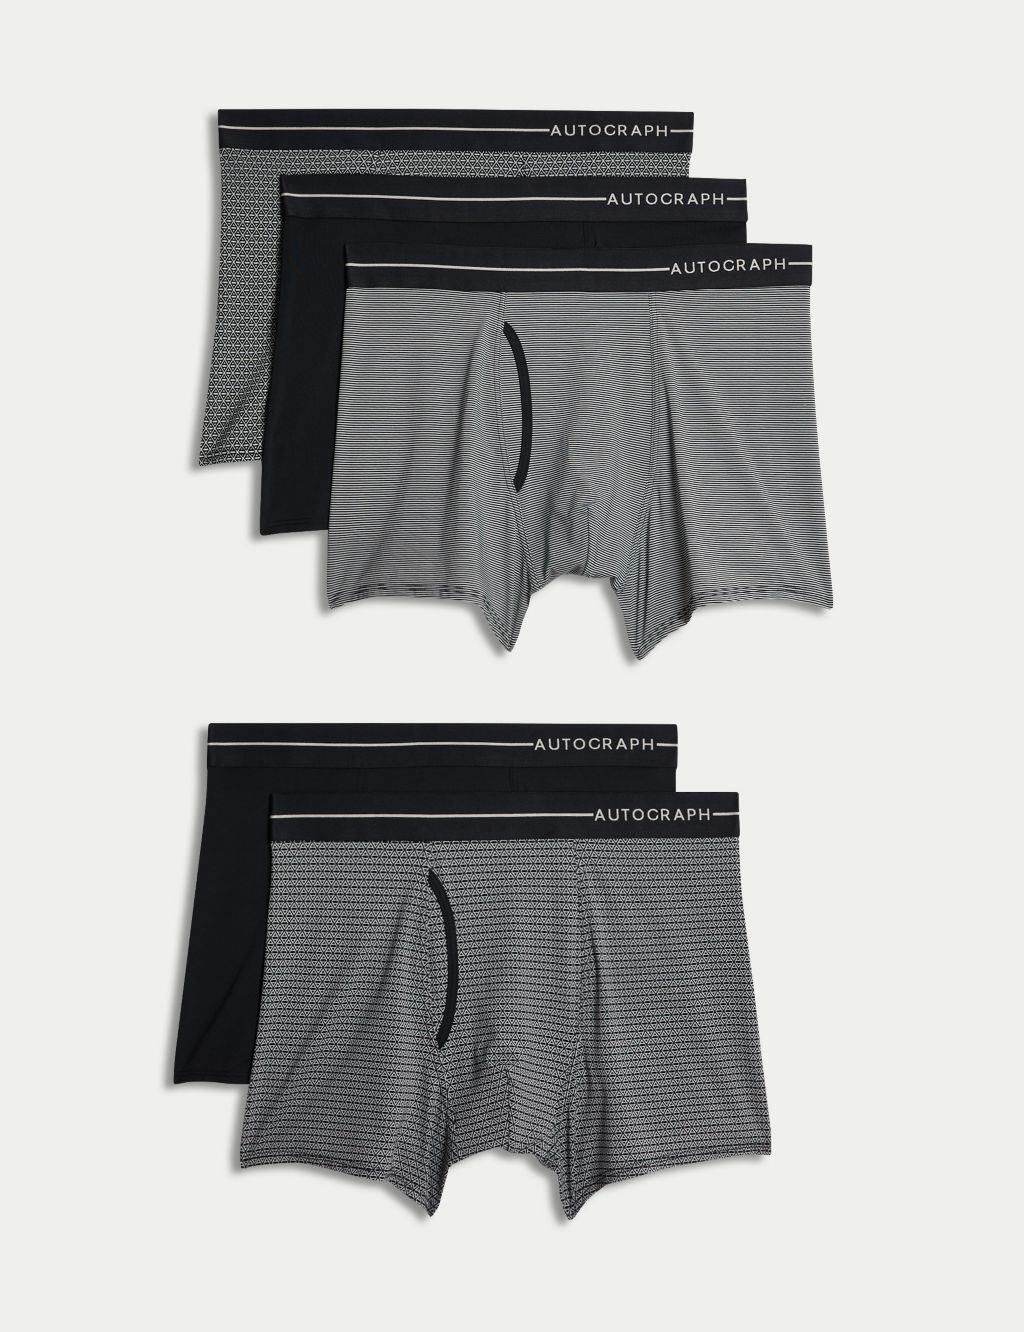 3 Fruit of the Loom Men's Basic White Brief Underwear 3XL, XXX